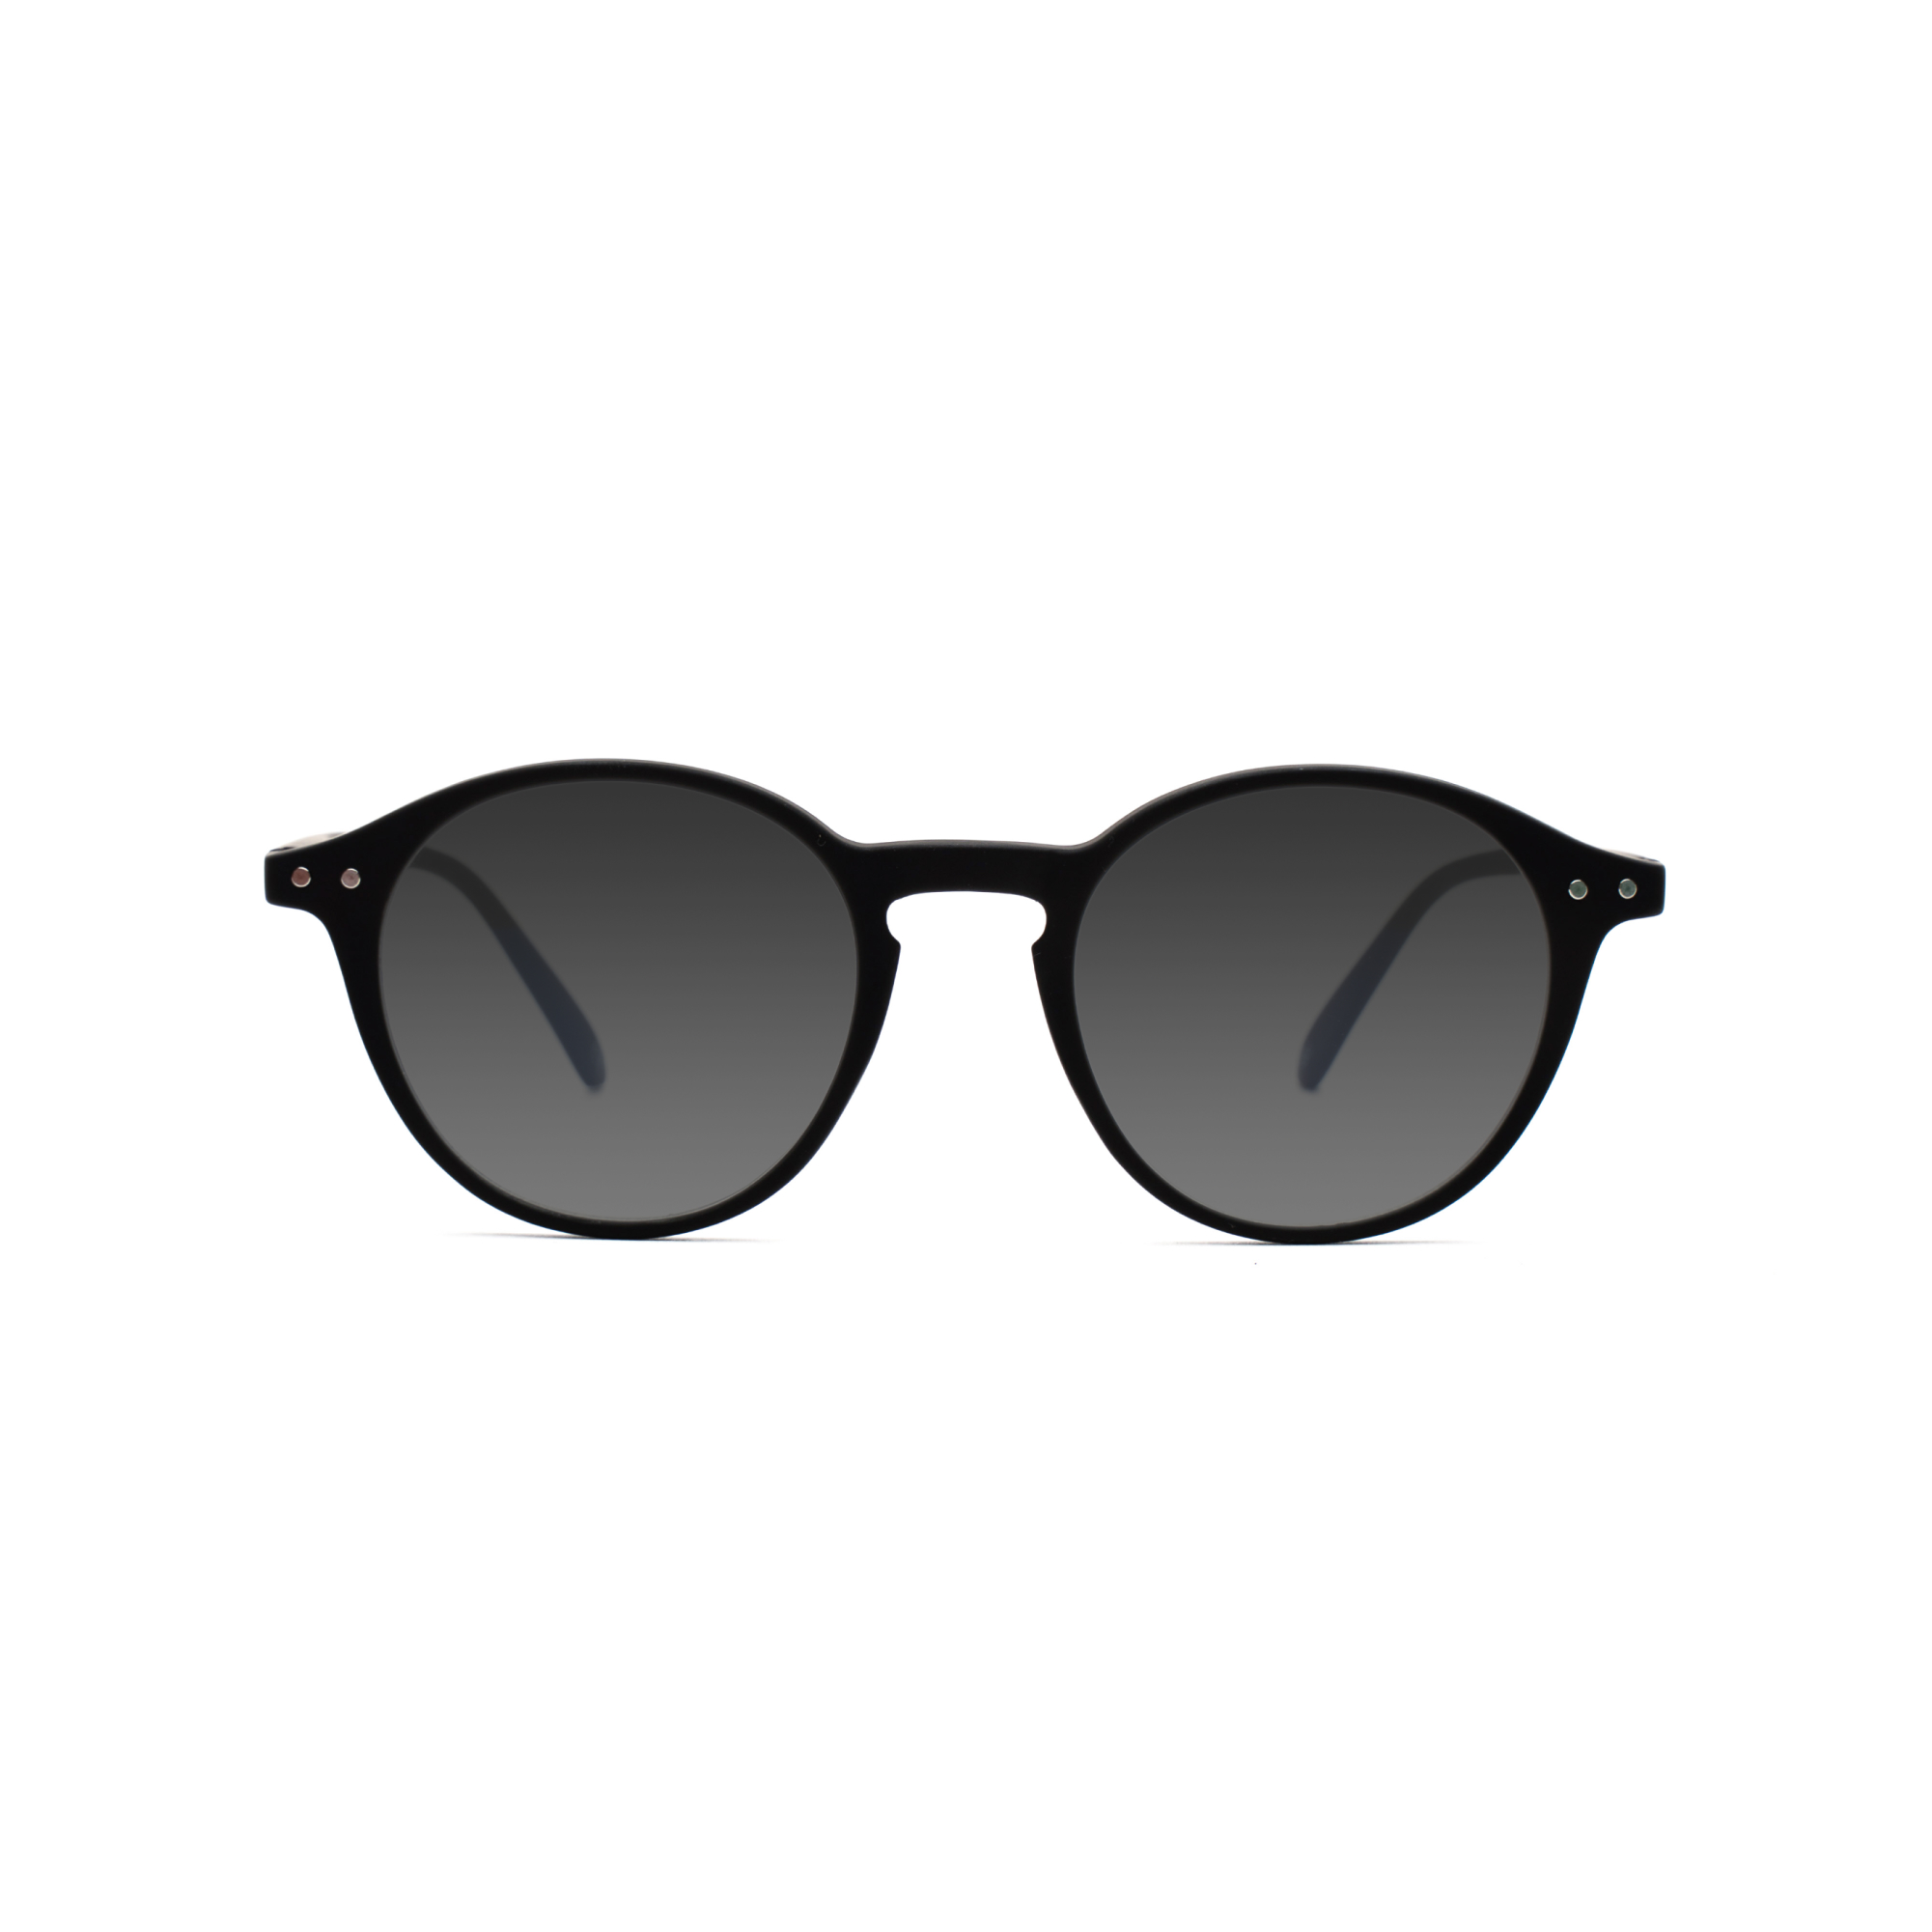 men's sunglasses – Luca UVSUN m - Black